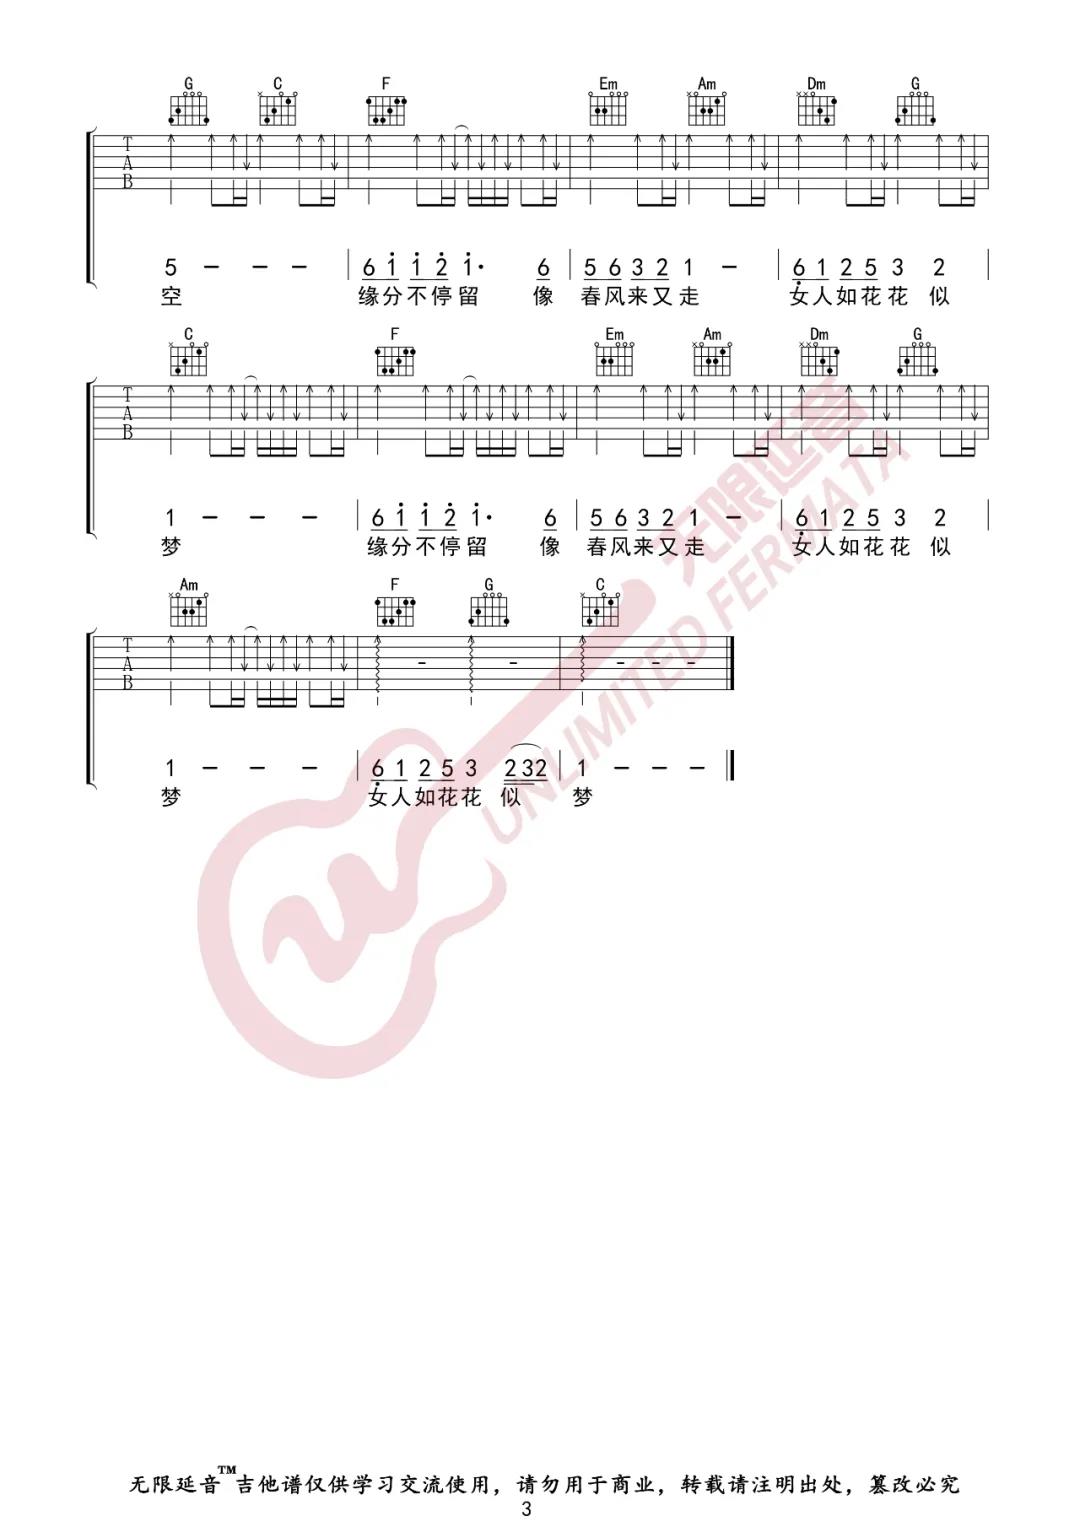 梅艳芳《女人花》吉他谱(C调)-Guitar Music Score